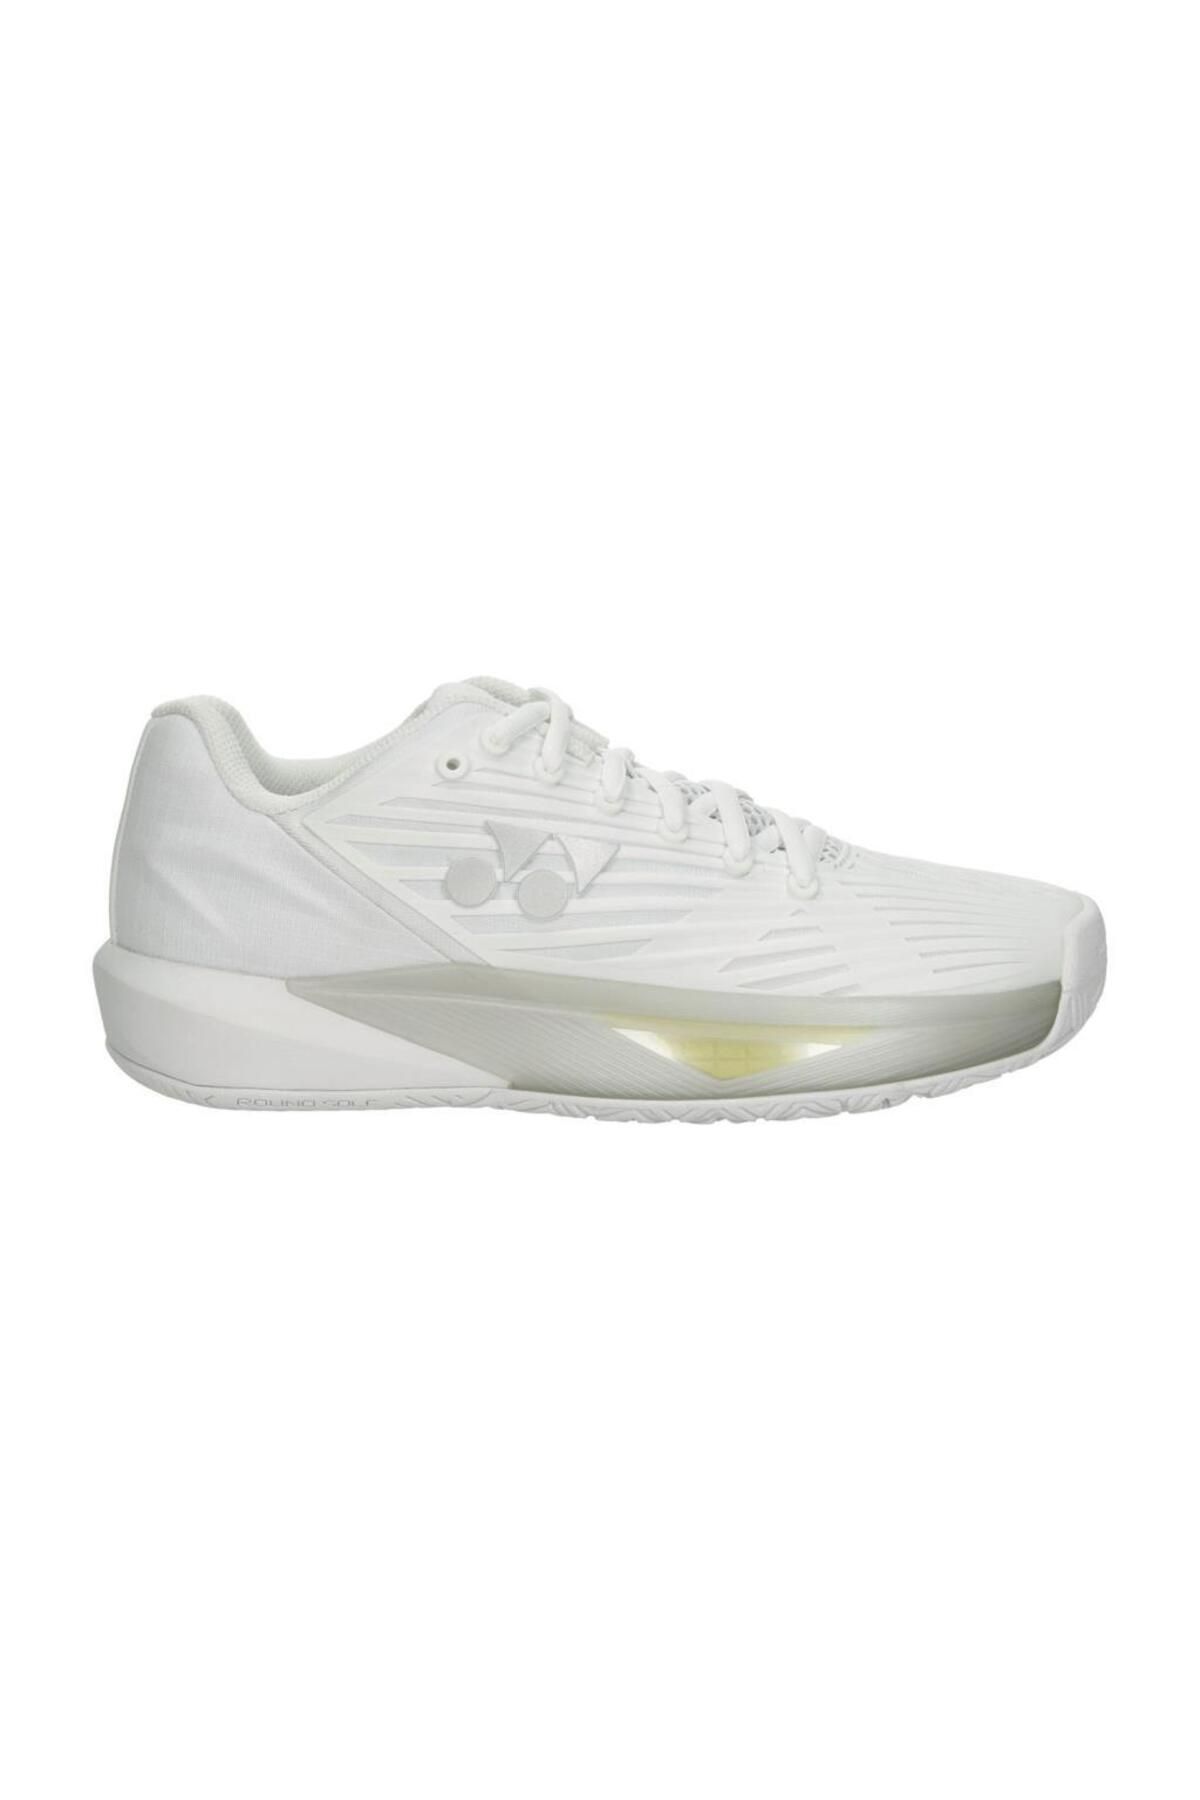 Yonex Power Cushion Eclipsion 5 Beyaz All Court Kort Kadın Tenis Ayakkabısı